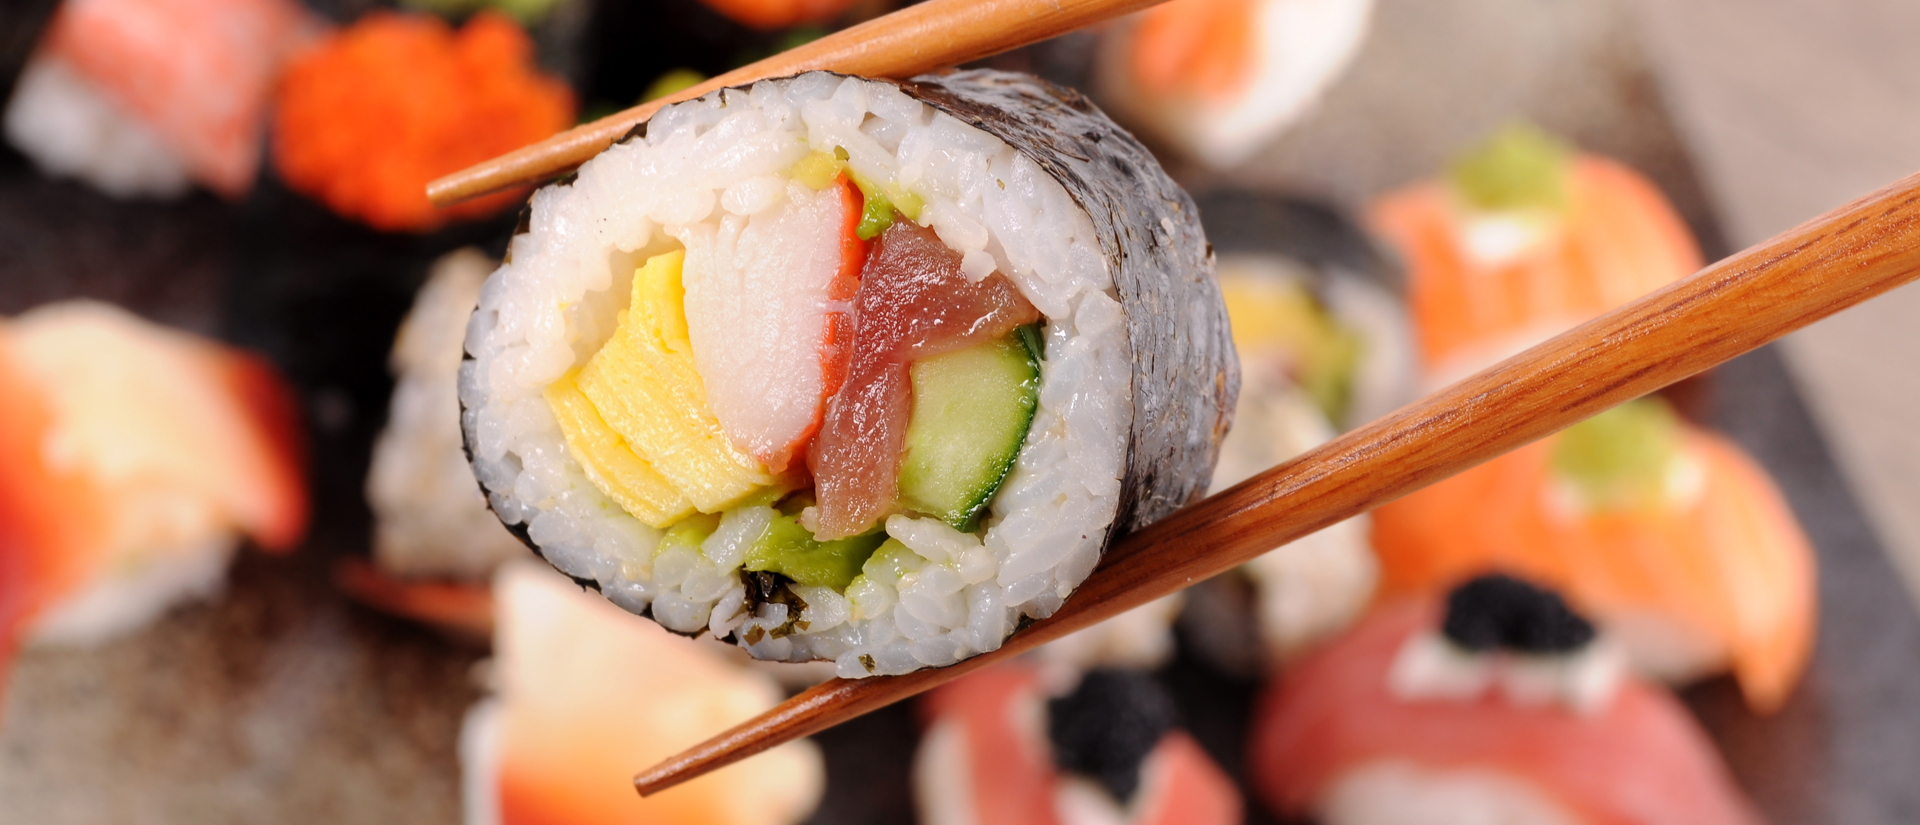 Dónde encuentro los mejores productos para sushi?